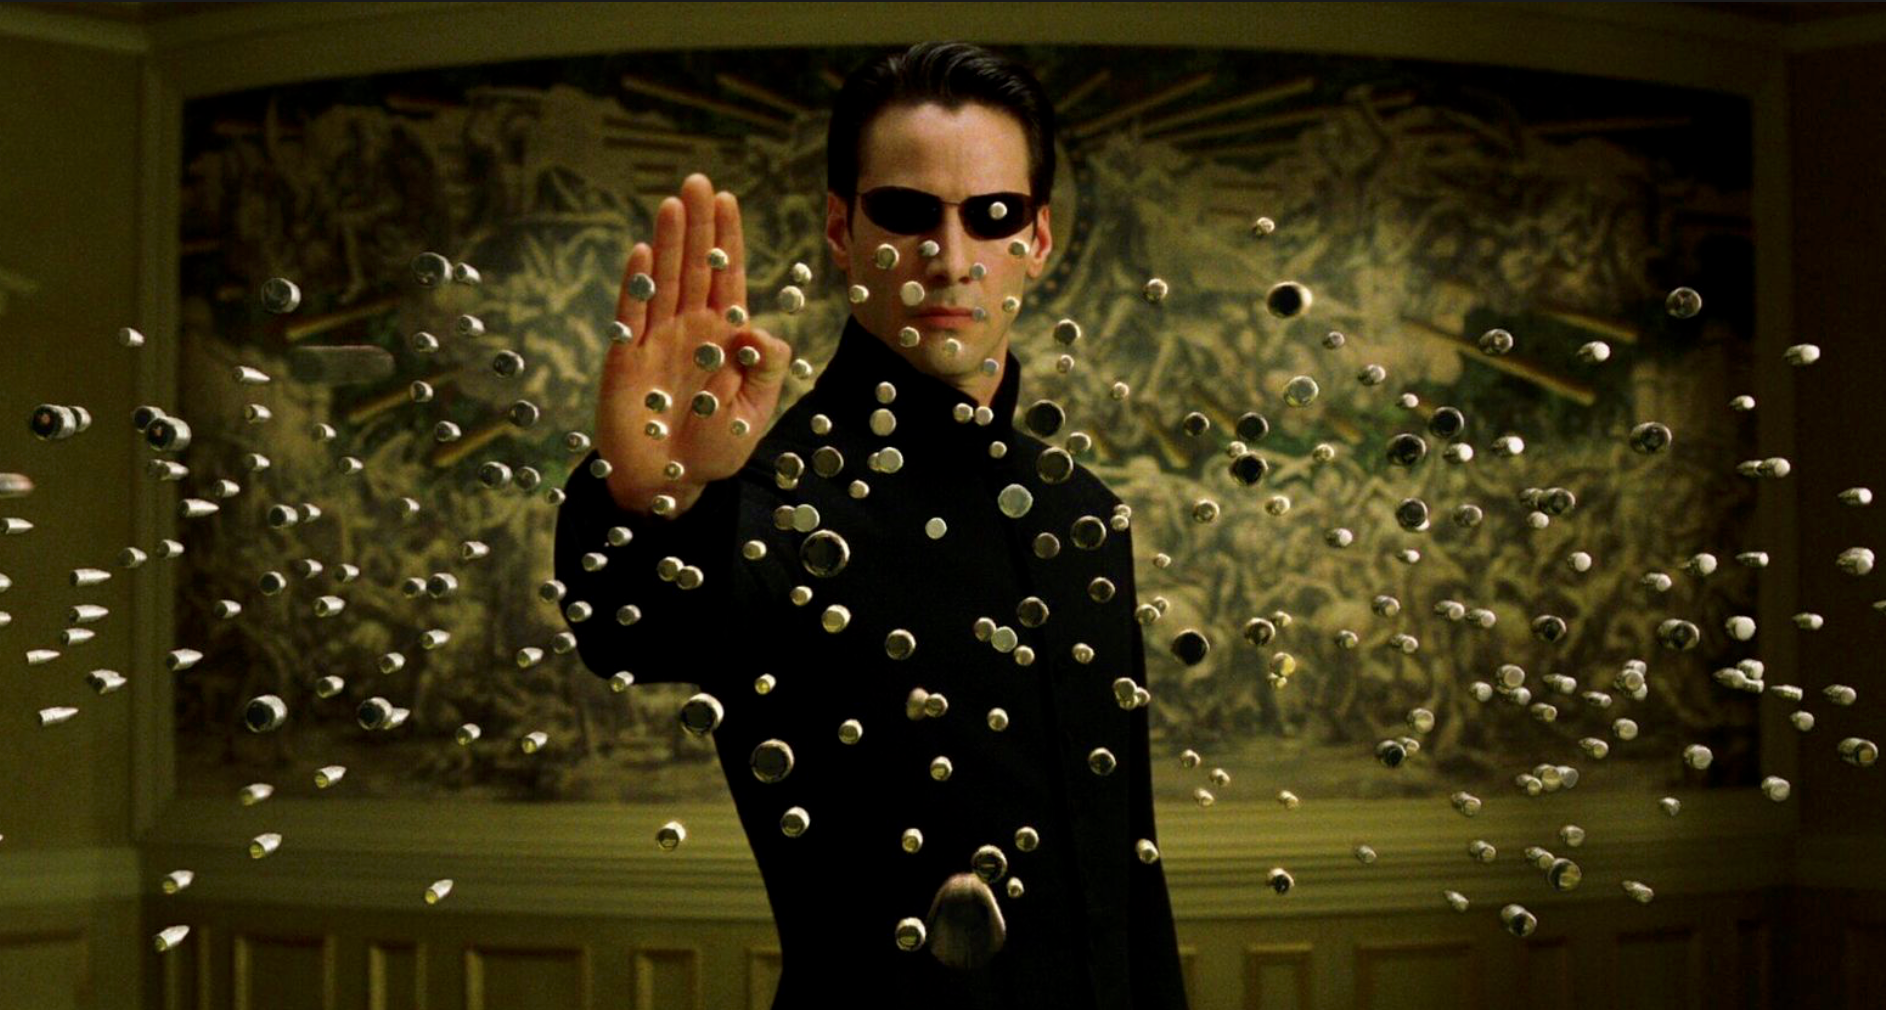 Neo và Trinity hồi sinh trong The Matrix 4: Ma trận cứ 70 năm reboot 1 lần thì dàn nhân vật chính được reset theo cũng có gì lạ đâu - Ảnh 2.